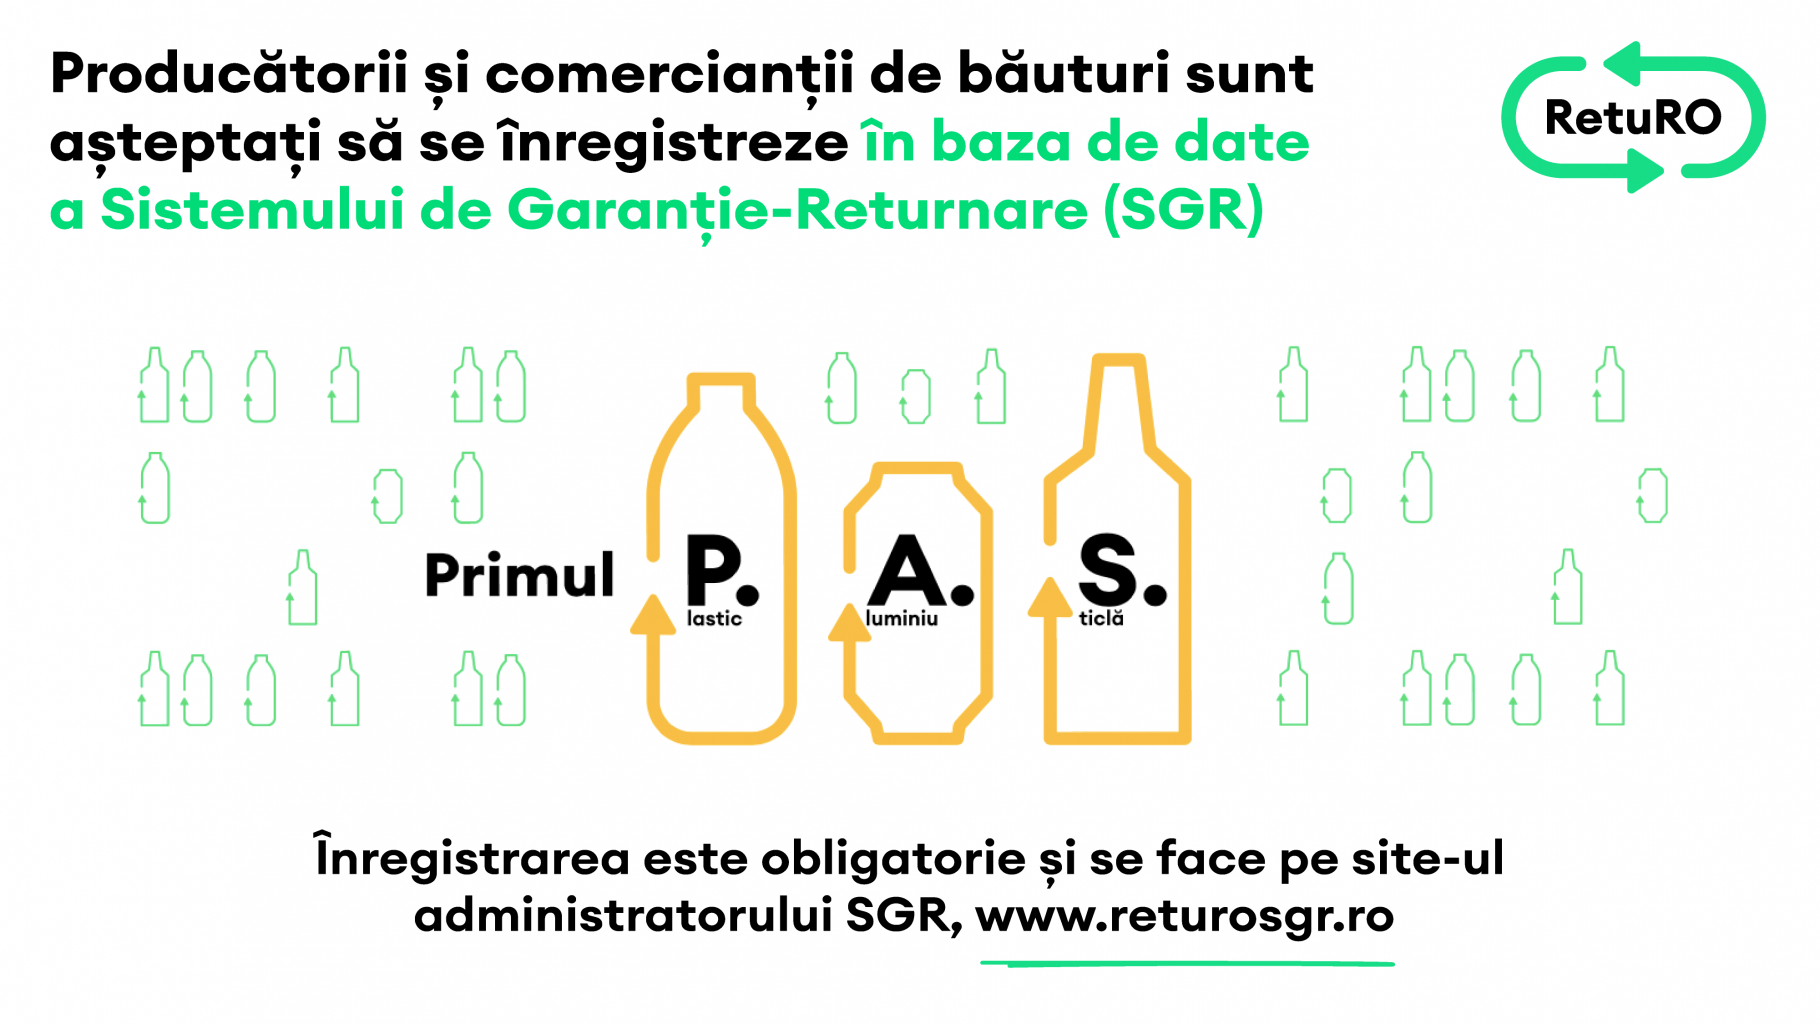 A început înregistrarea obligatorie a comercianților și producătorilor în baza de date a Sistemului de Garanție-Returnare (SGR)